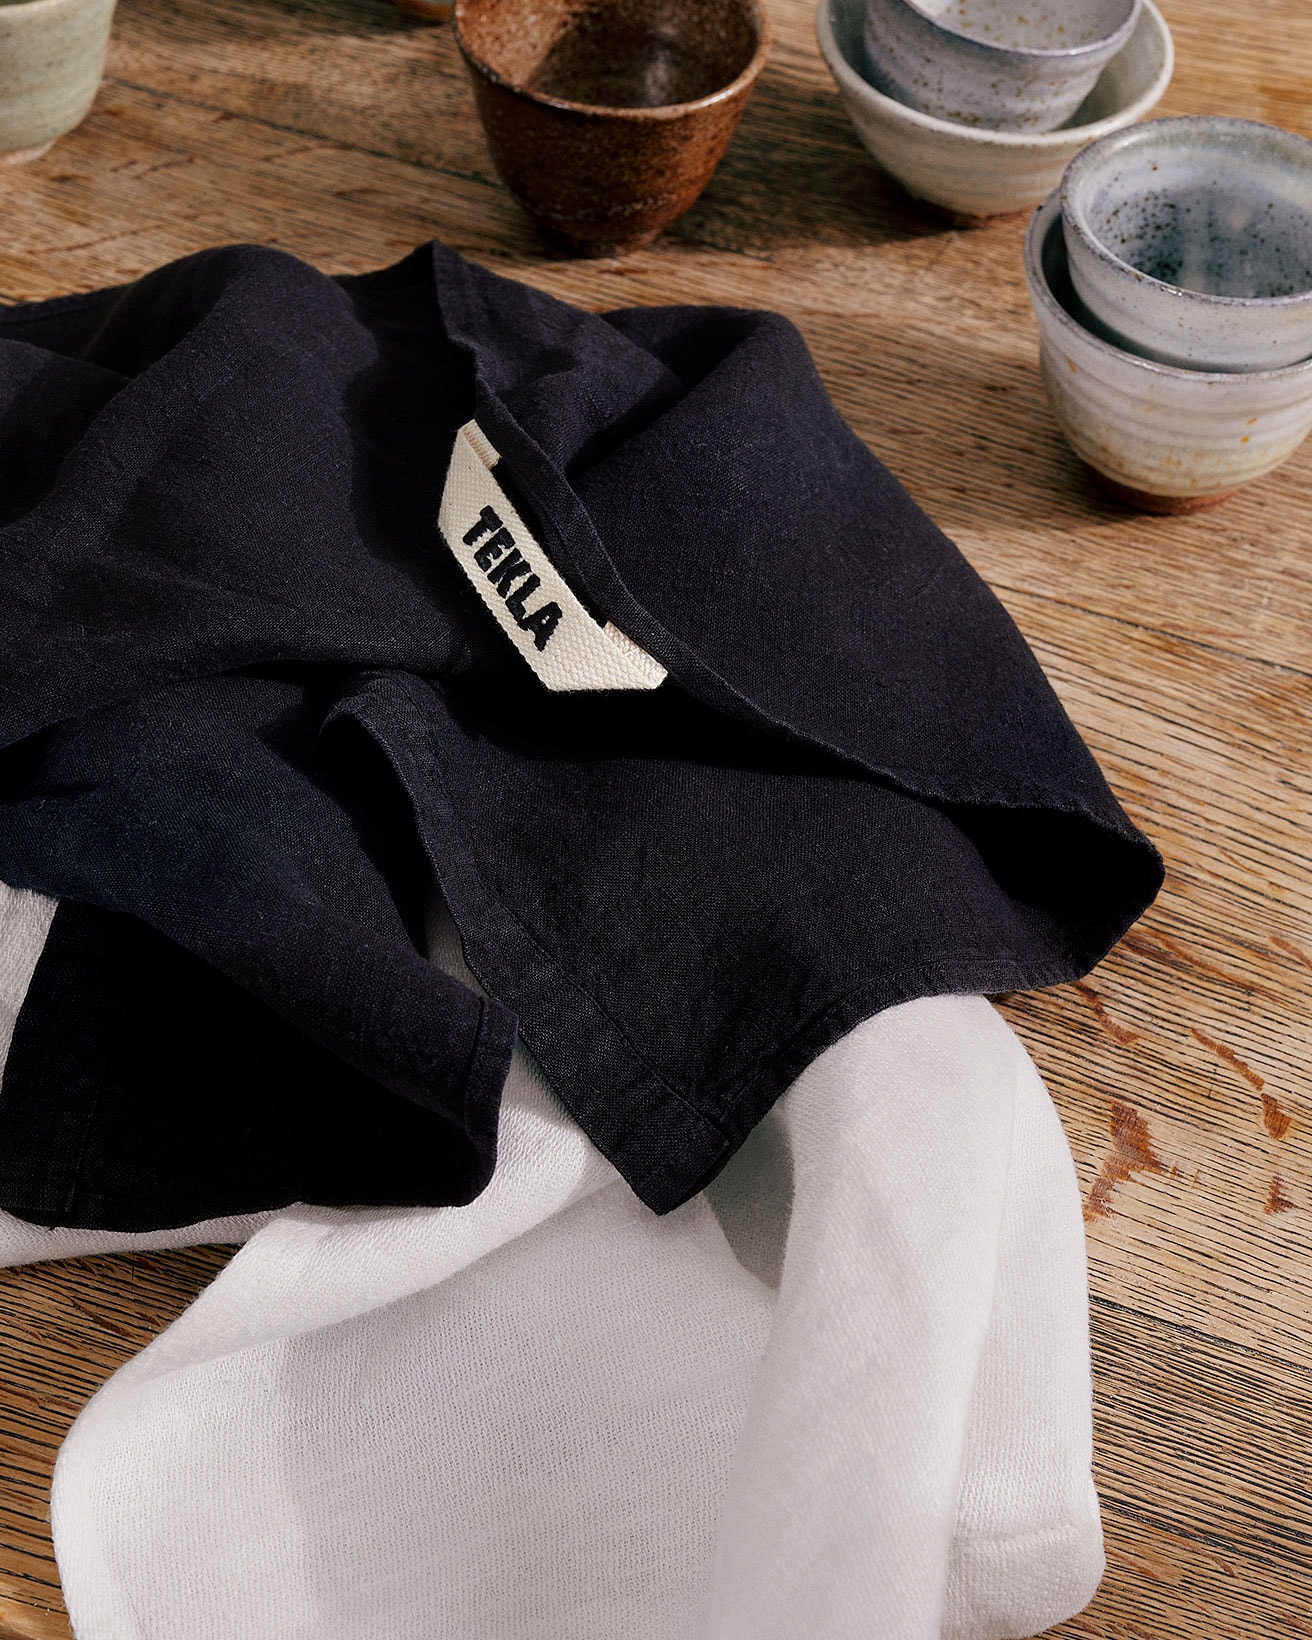 Tekla Fabrics Kitchenware Textiles Collection Napkin